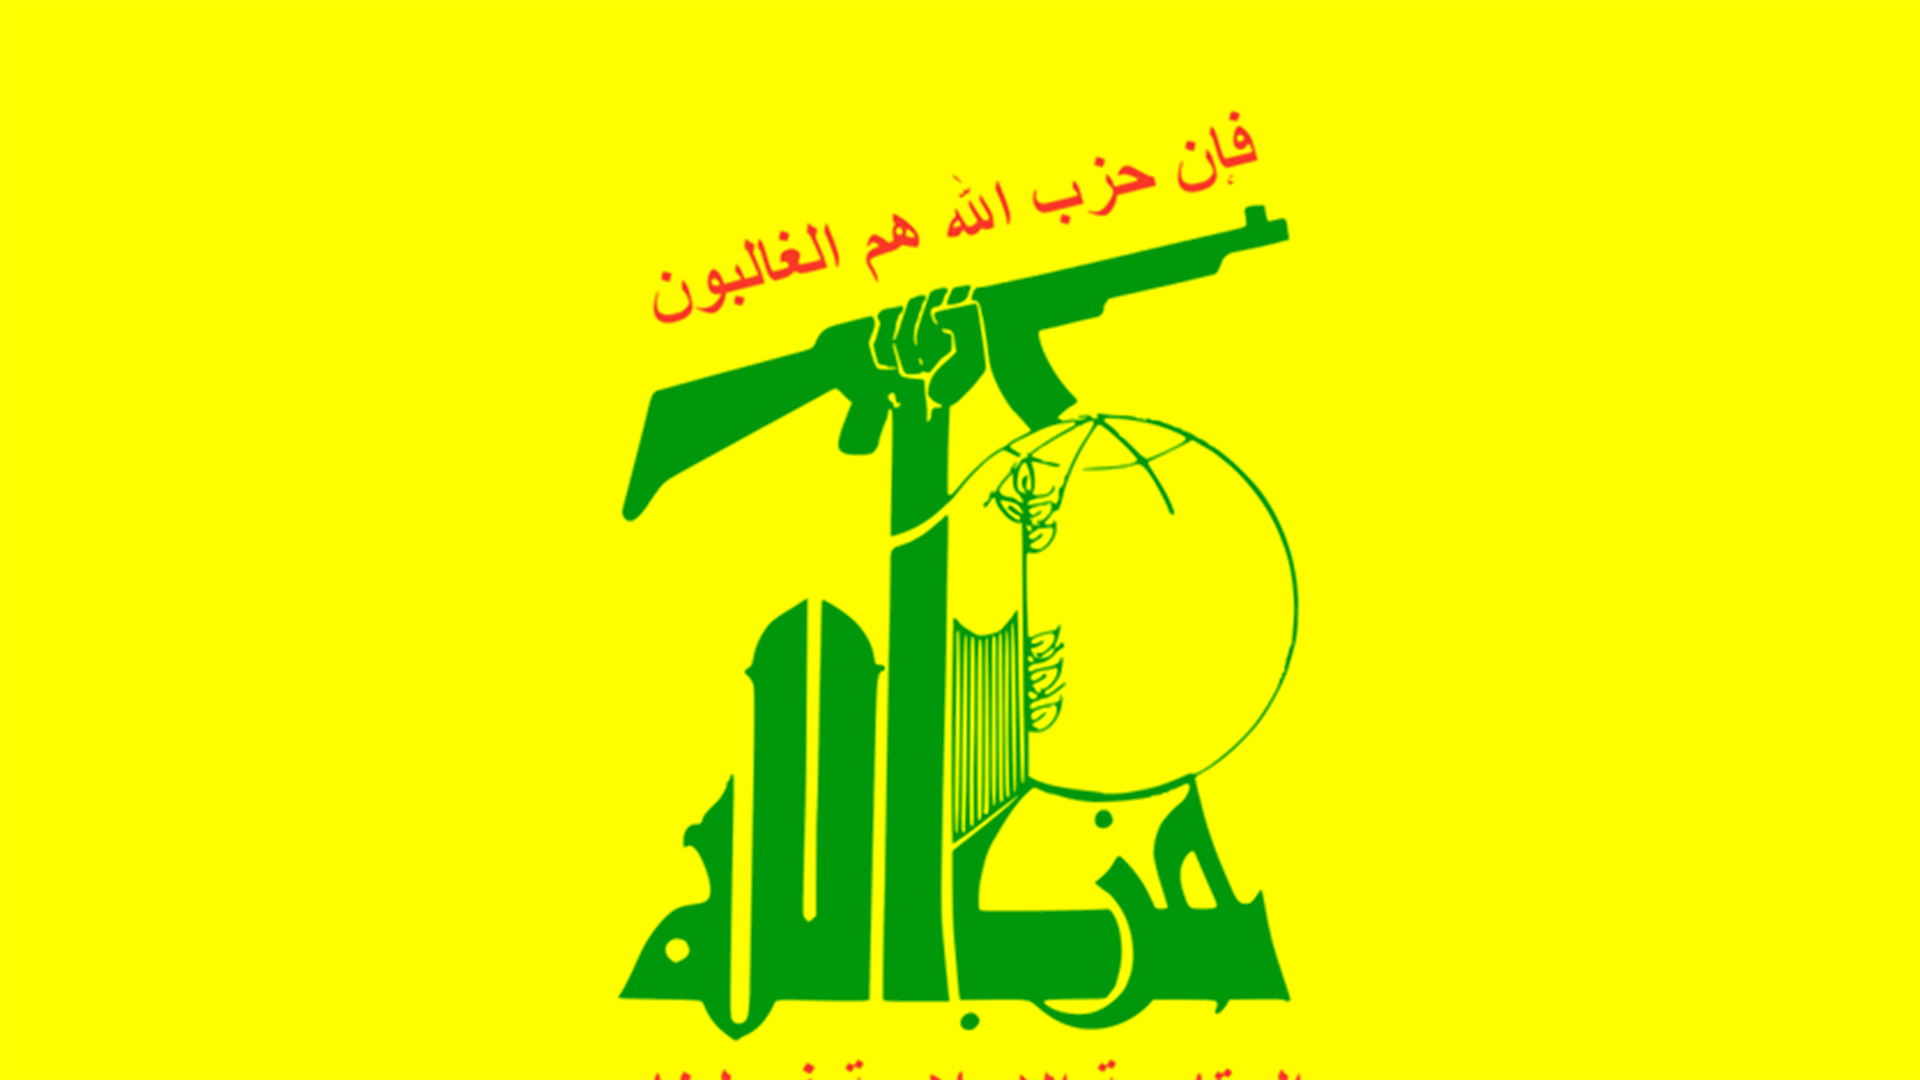 وكالة فارس: اغتيال أحد قادة حزب الله في جنوب لبنان